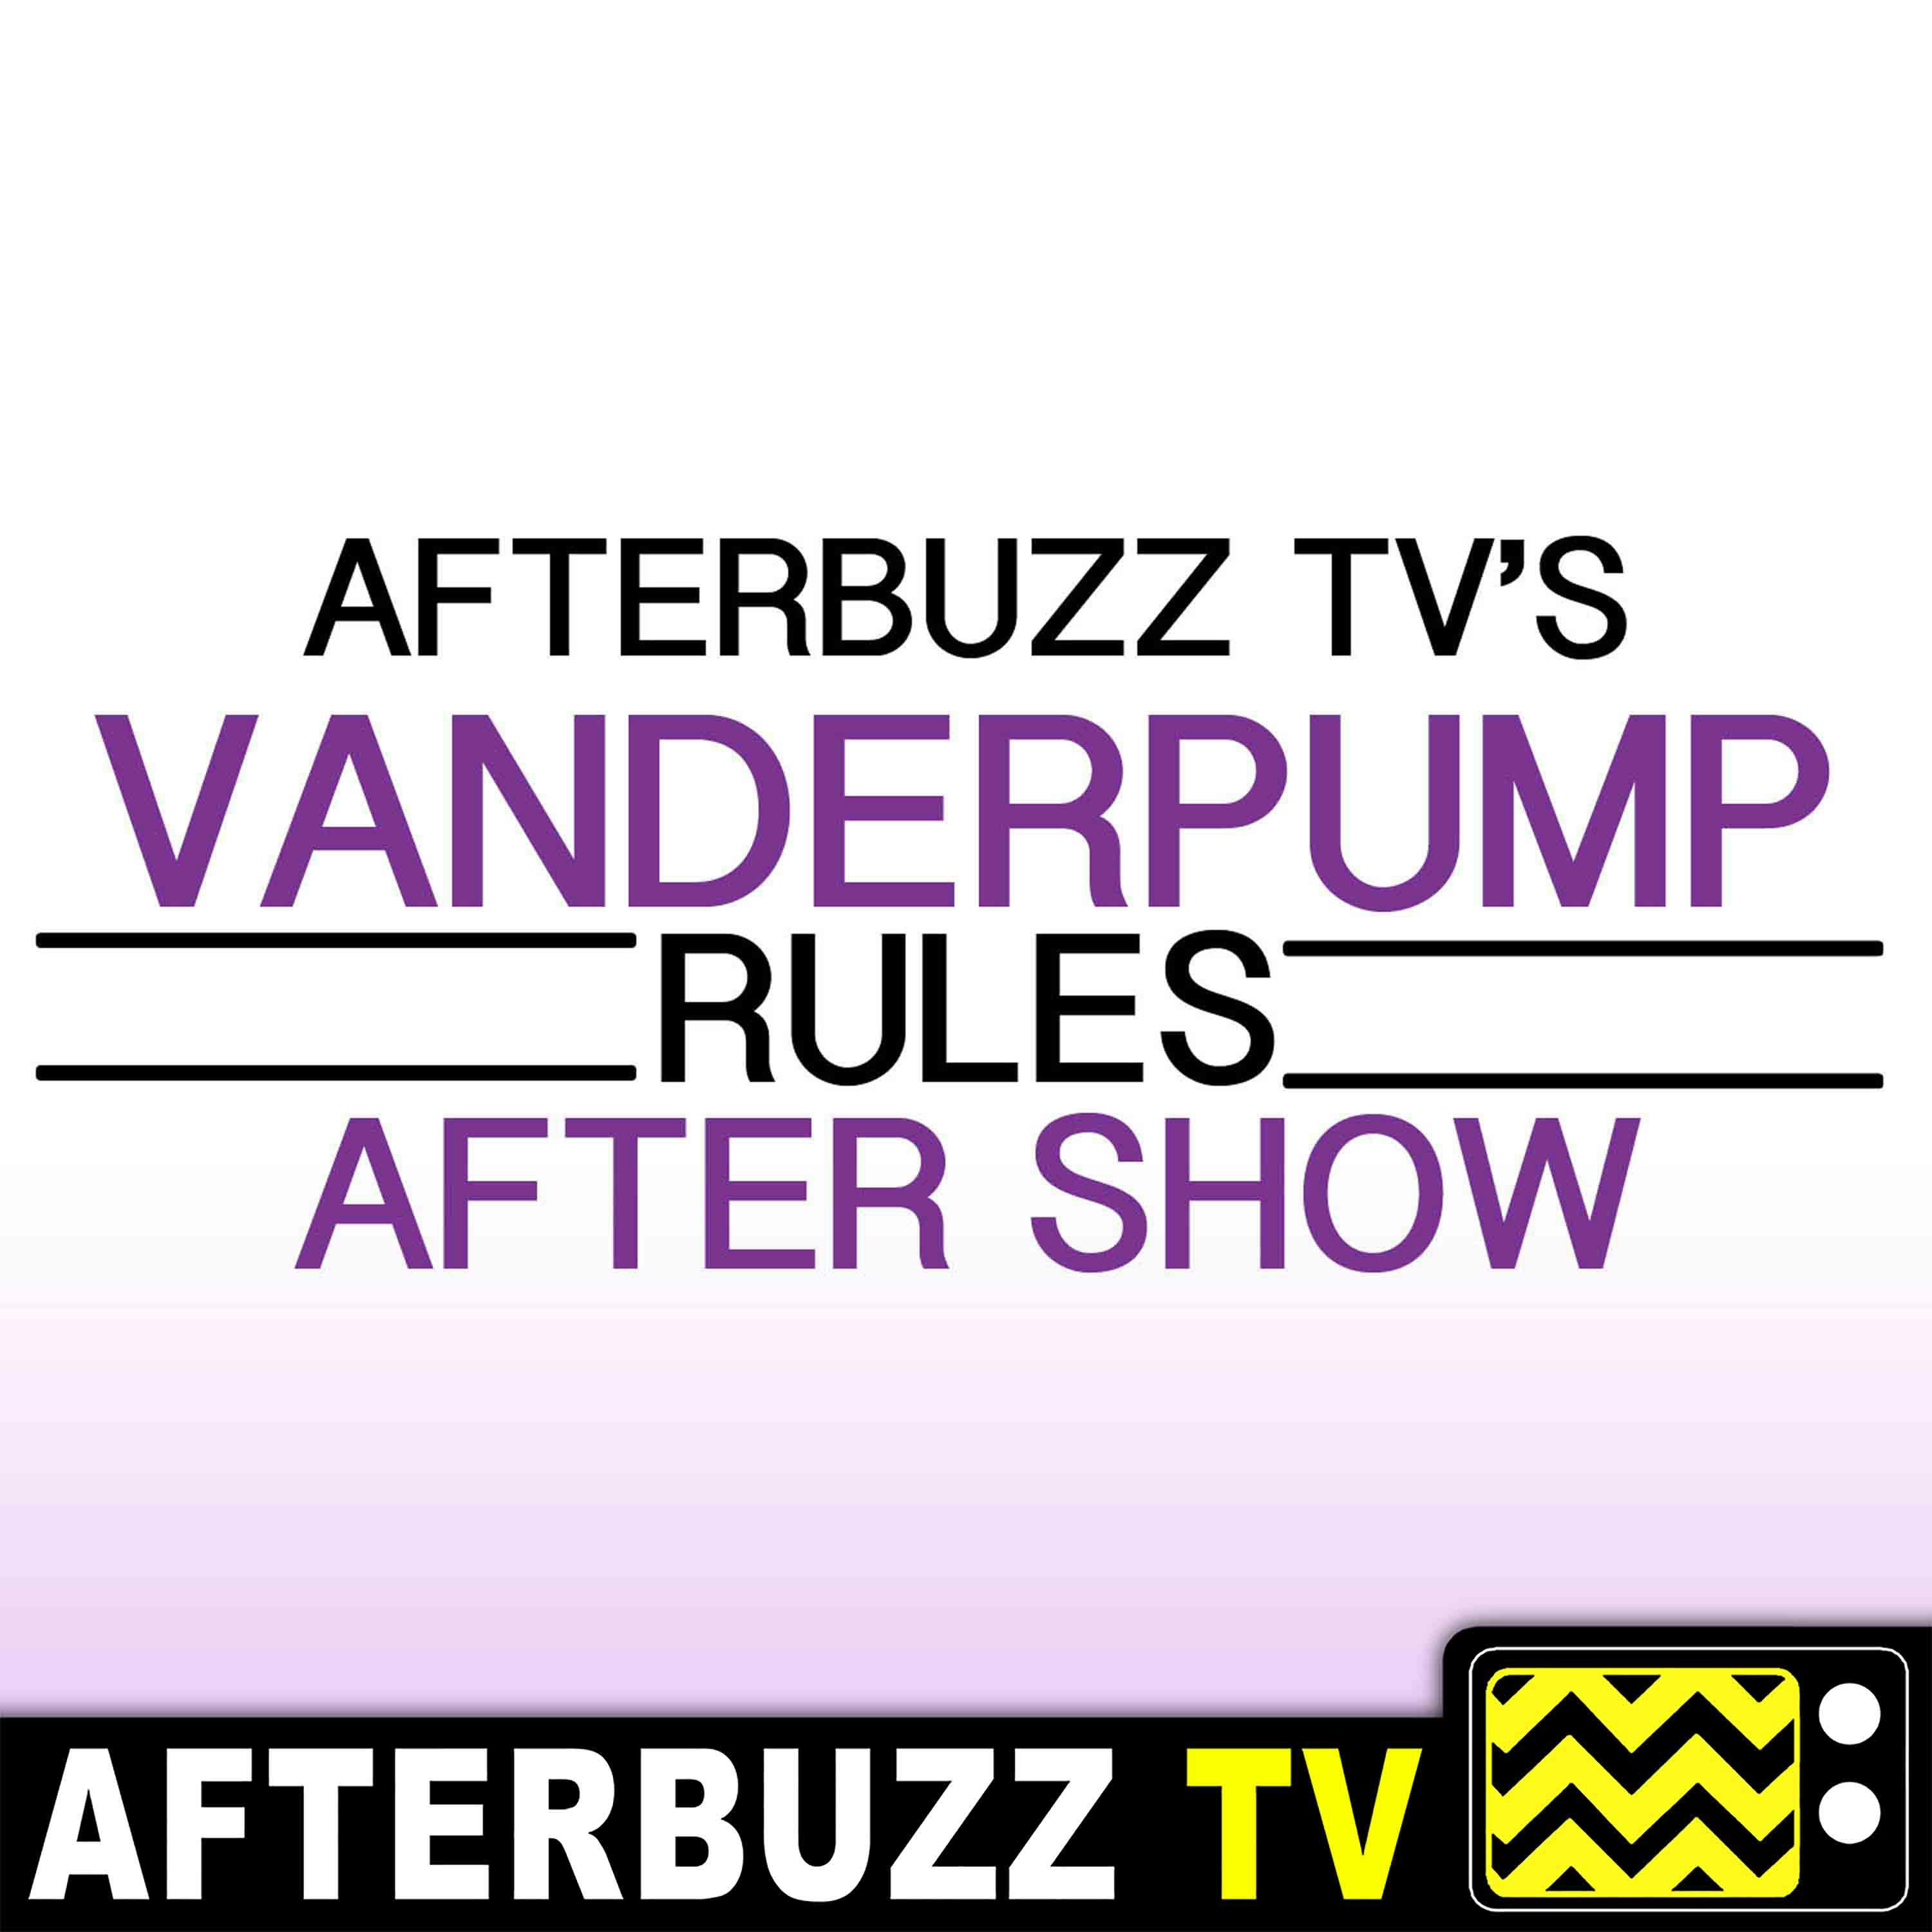 "Reunion Part 1" Season 7 Episode 21 'Vanderpump Rules' Review